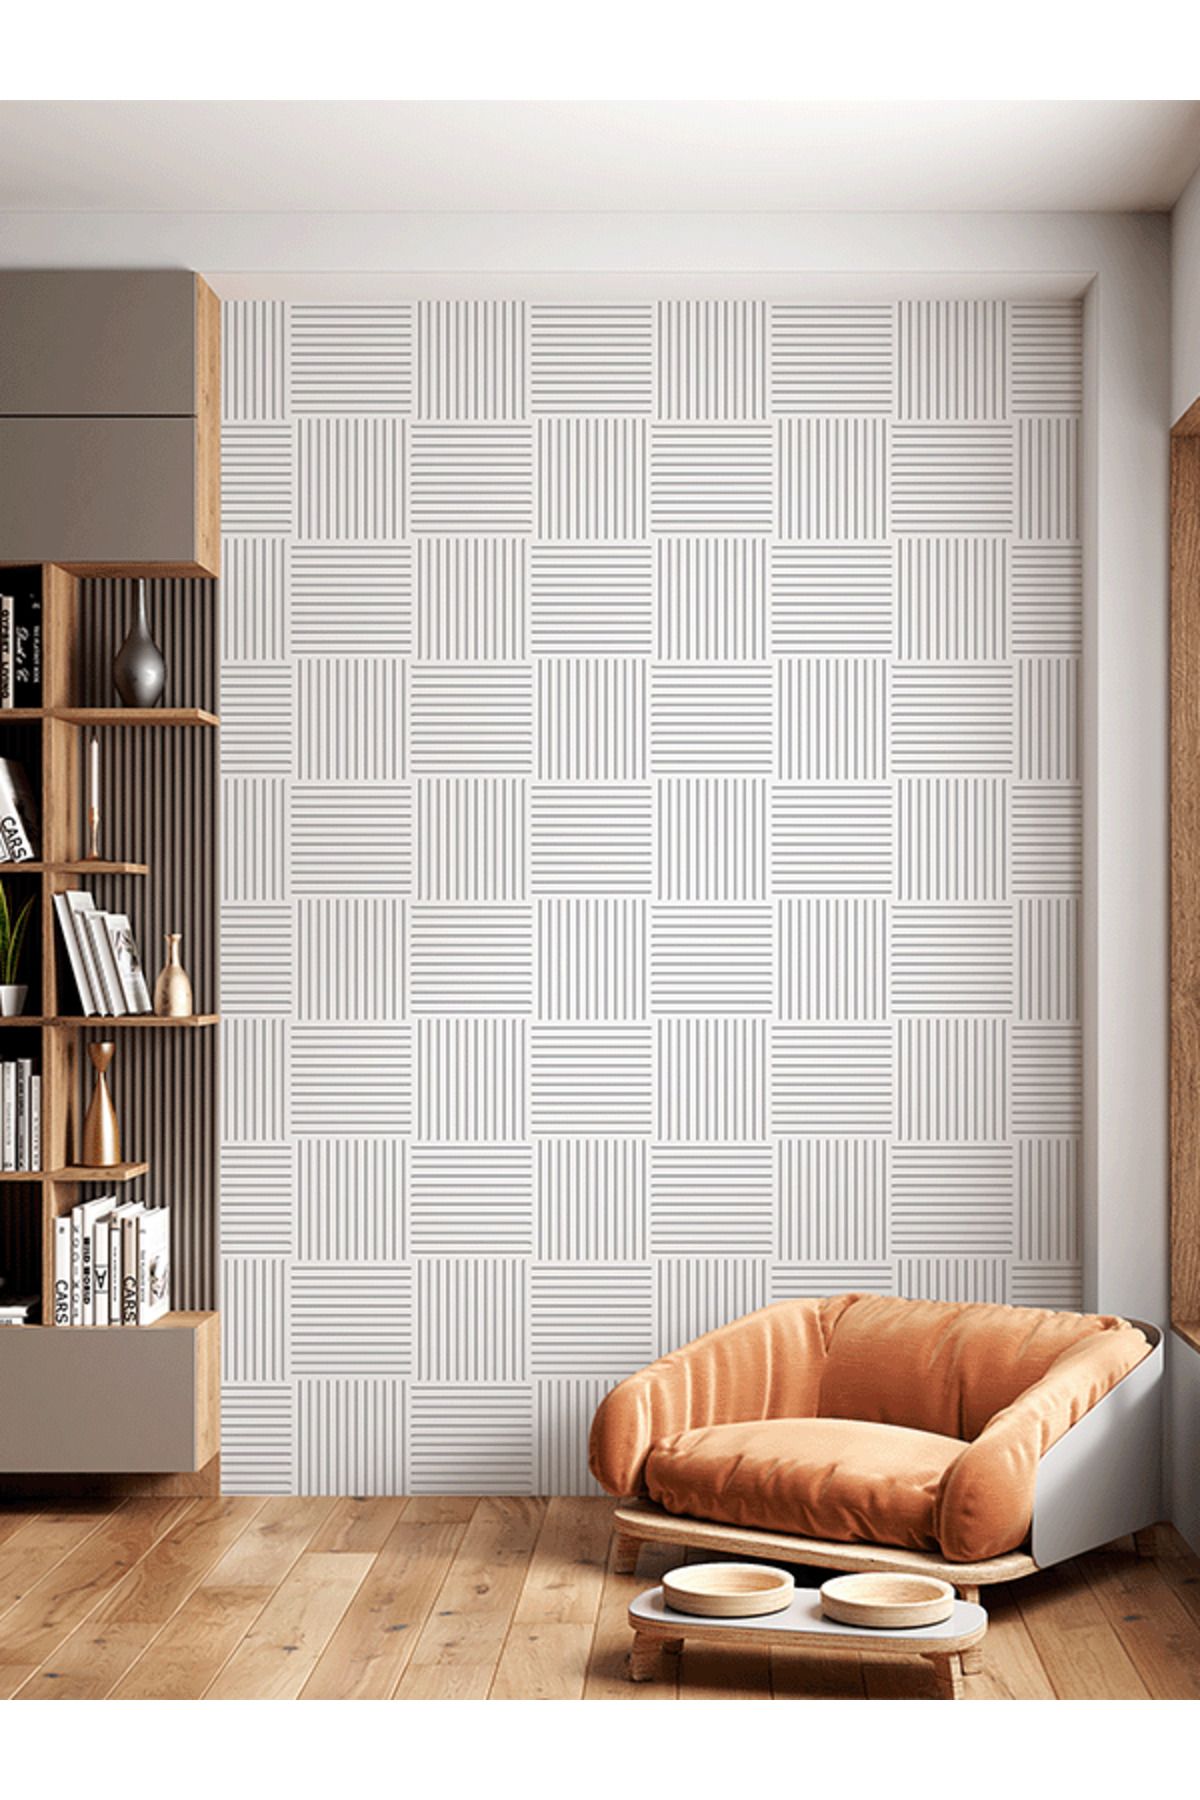 dreamwall Siyah Beyaz Geometrik Desenli Isı Ve Ses Yalıtımlı Sağlıklı Tekstil Duvar Kağıdı